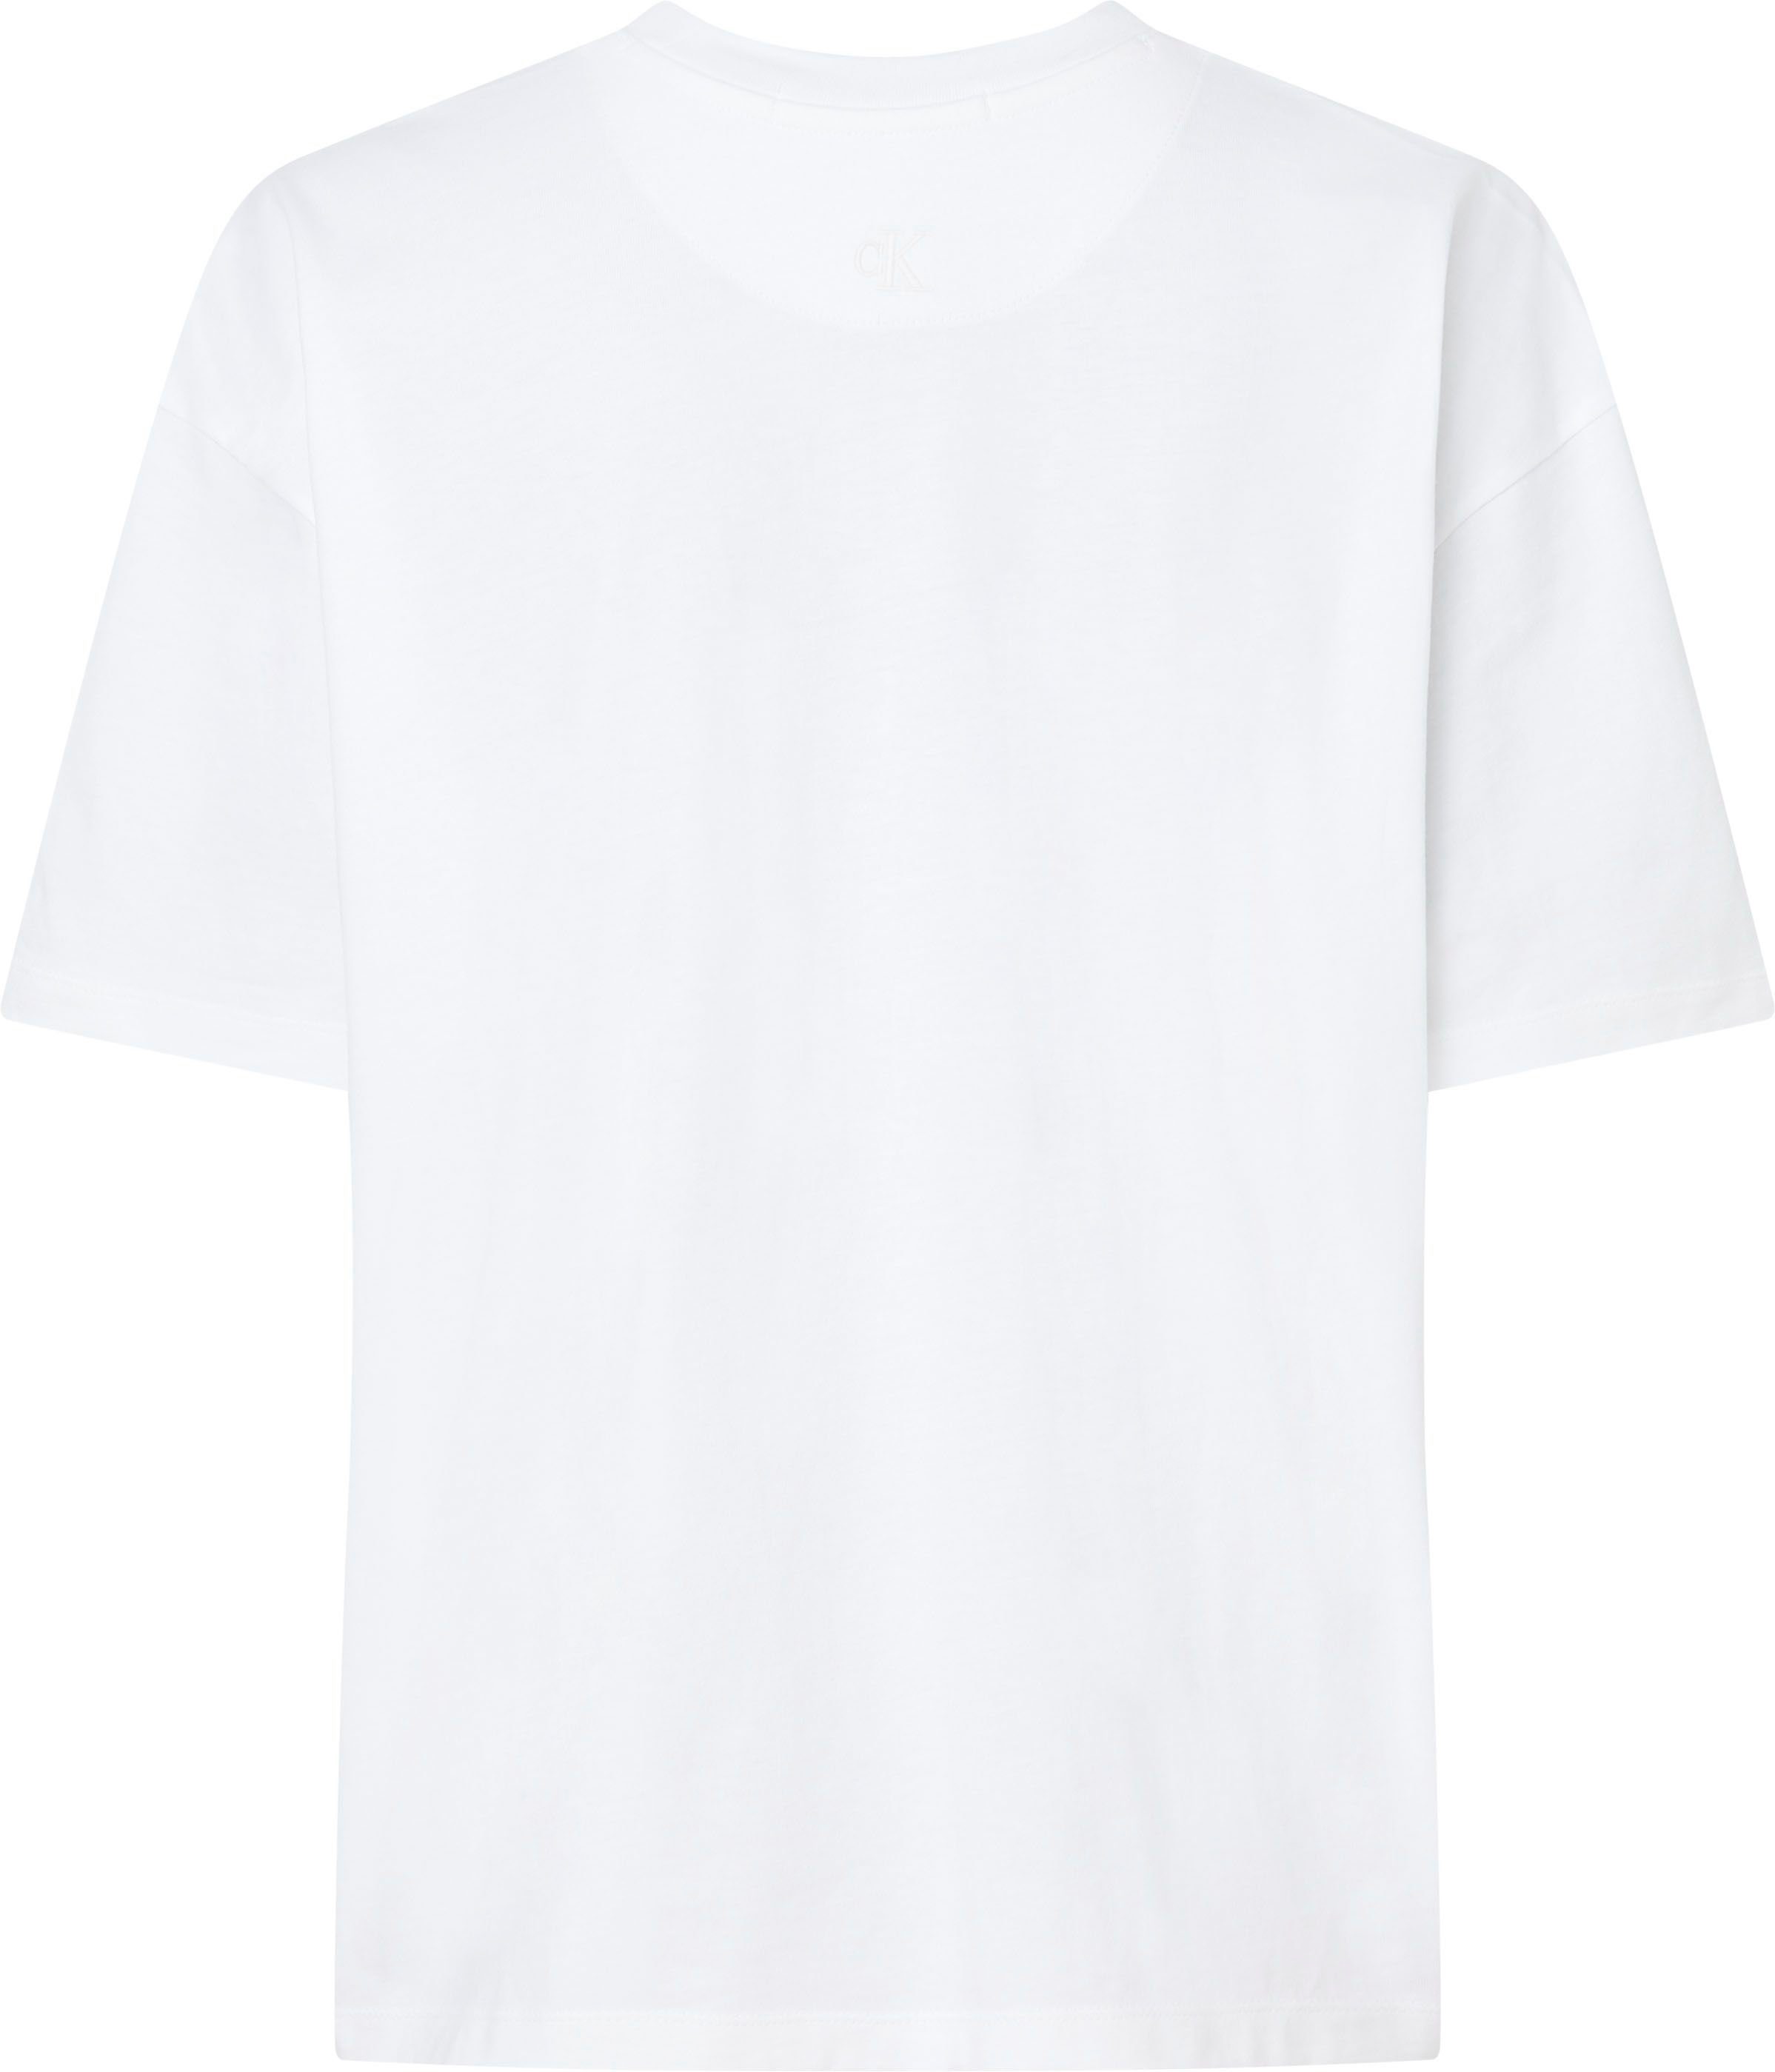 Klein Jeans Oversized-Passform in weiß T-Shirt Calvin